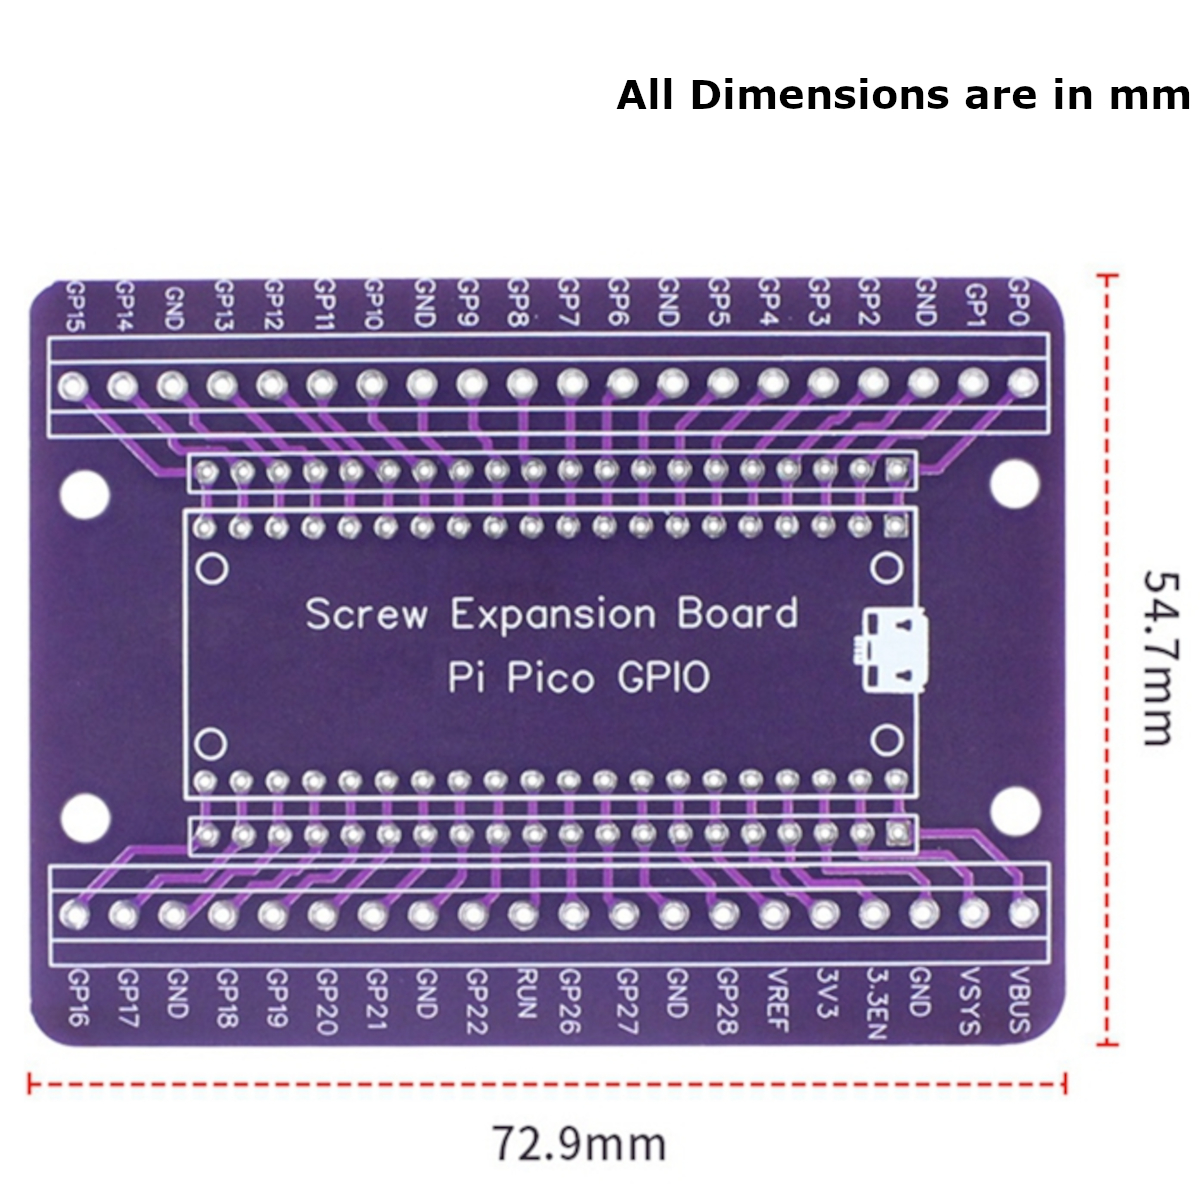 Raspberry Pi Pico Expansion Board - Dimensions